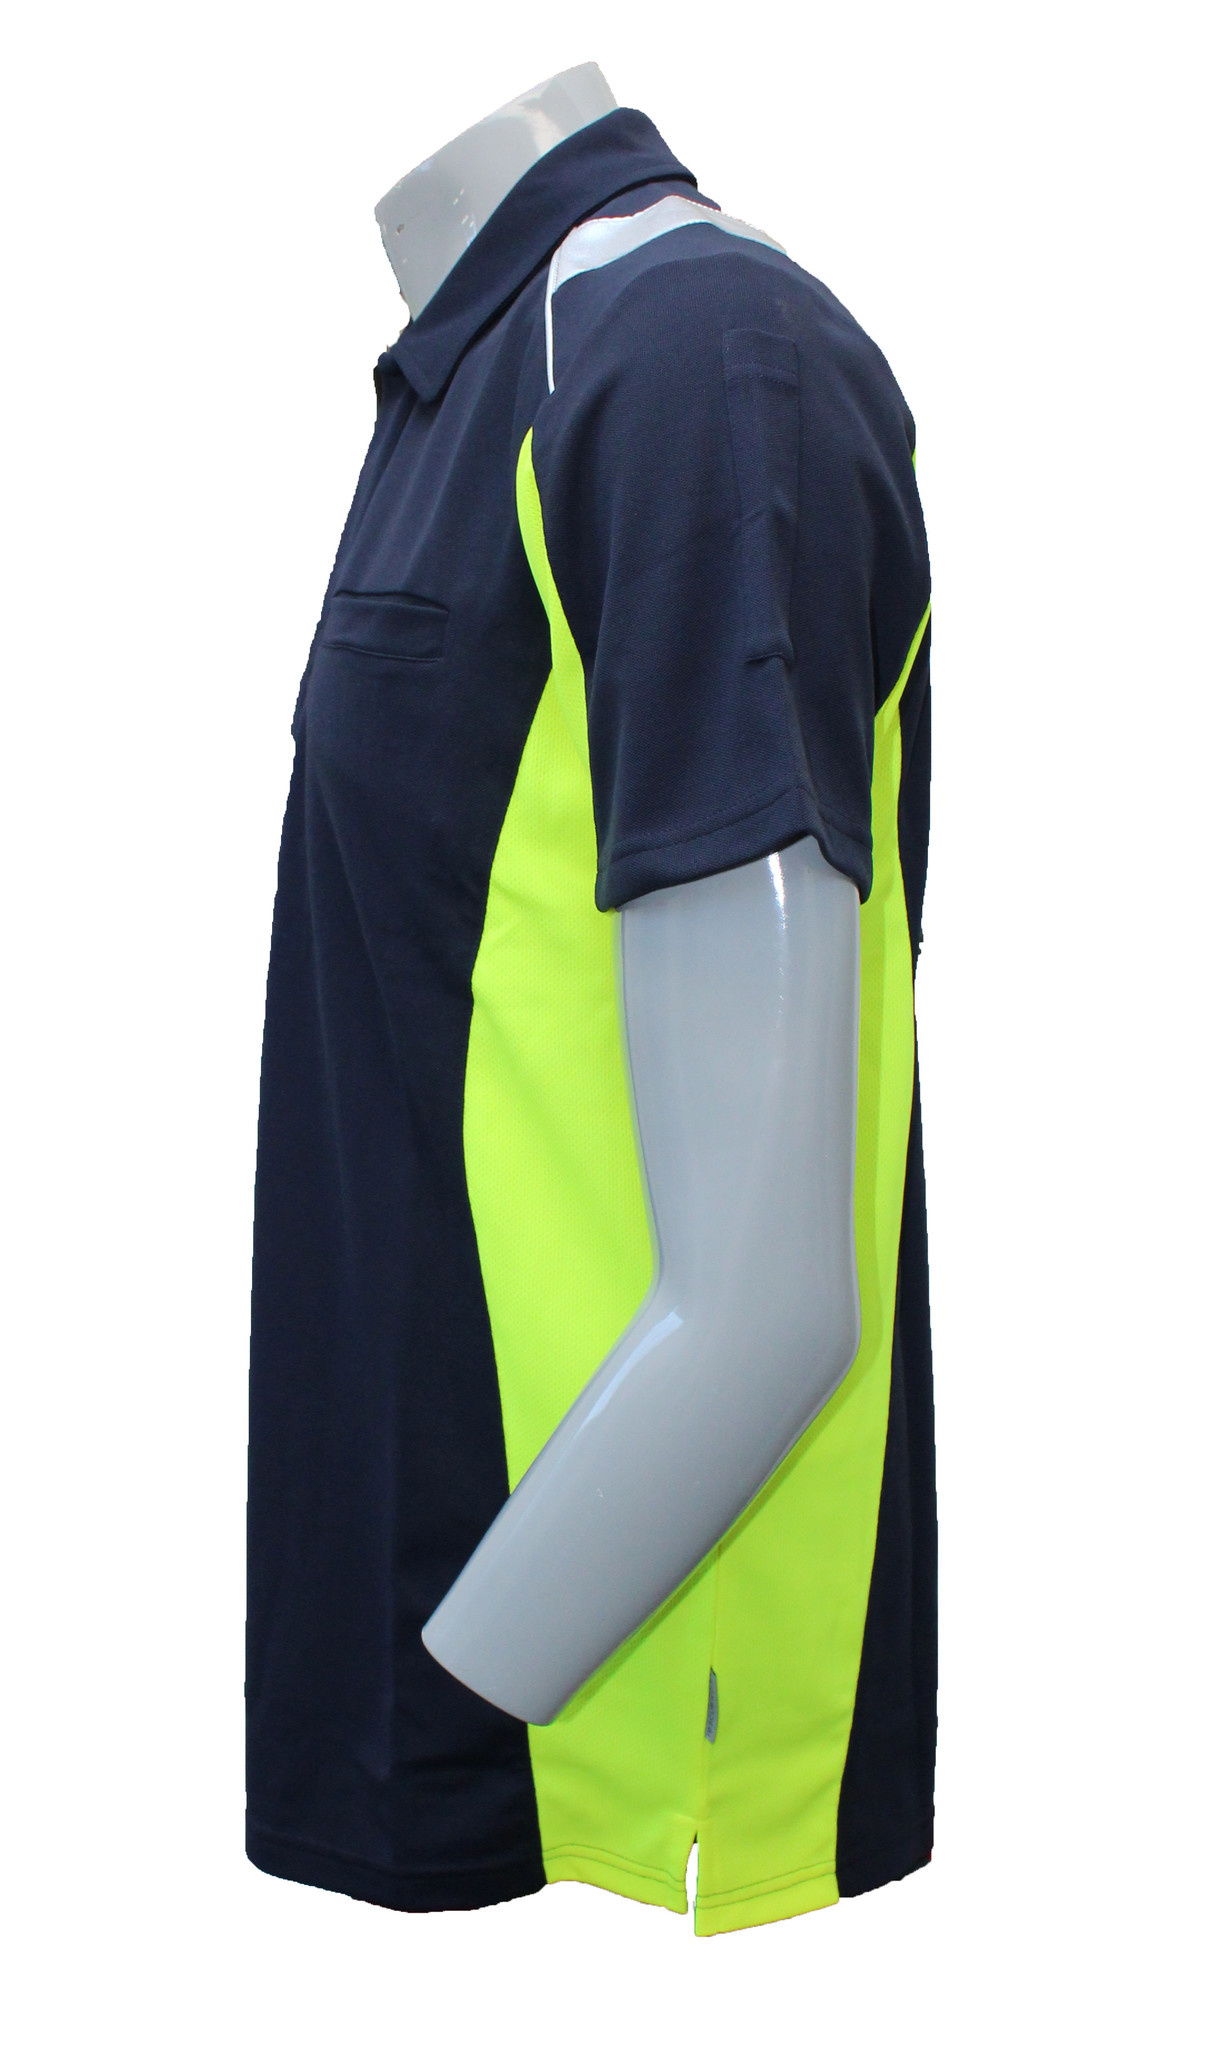 Rescuewear Damenpolo marineblau / neongelb